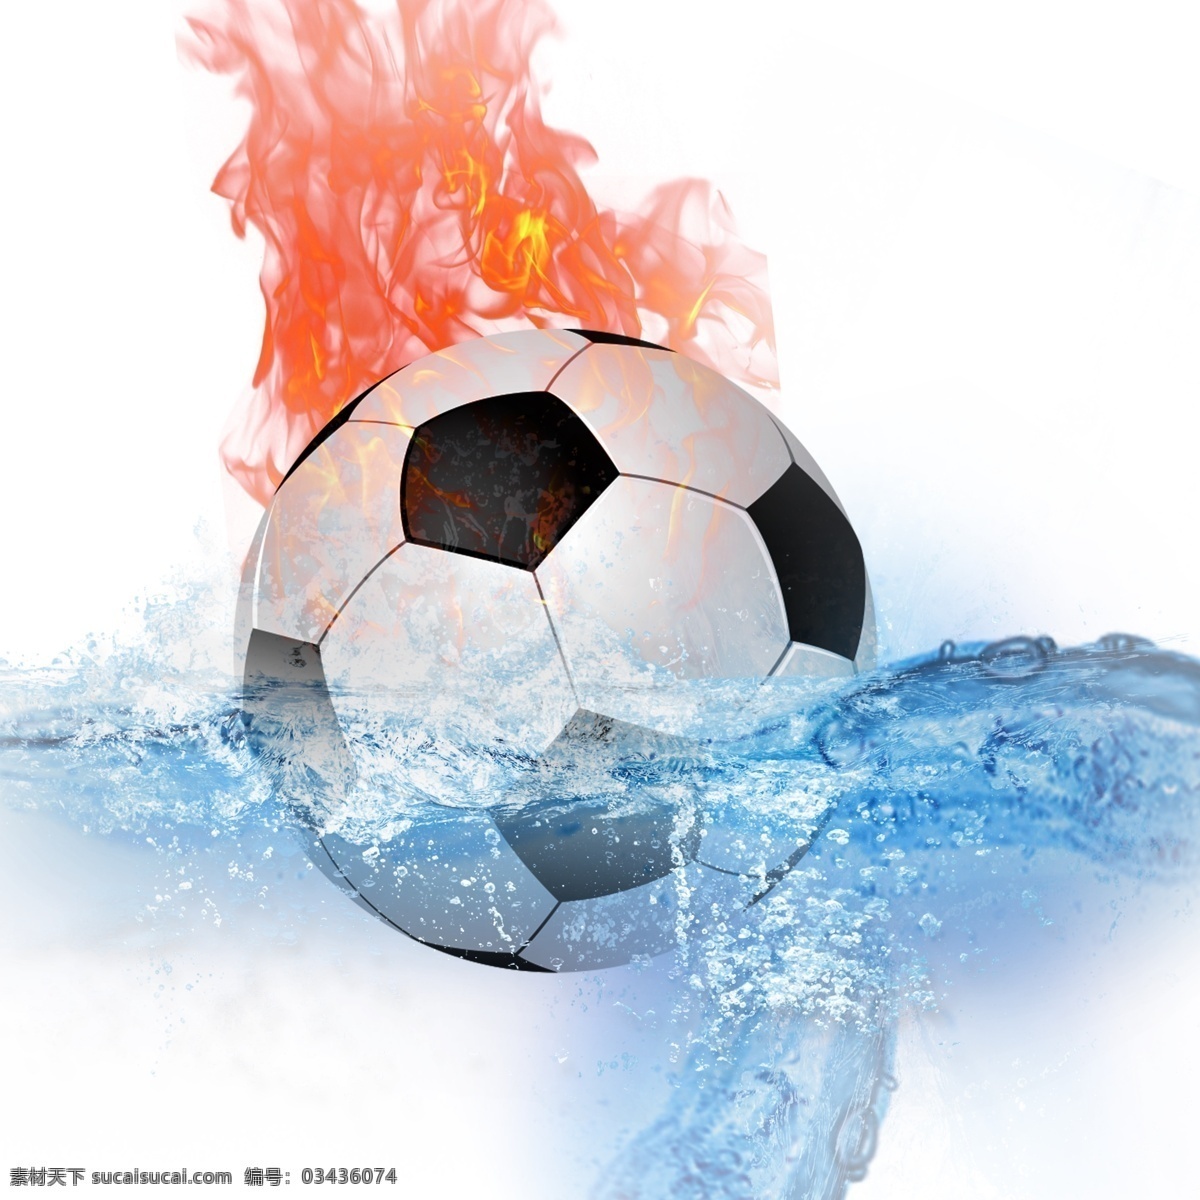 世界 杯水 火 足球 免 抠 图 卡通手绘 水彩 世界杯 创意足球 足球运动 水火足球 水花 蓝色 火焰 抽象 体育运动 运动器材